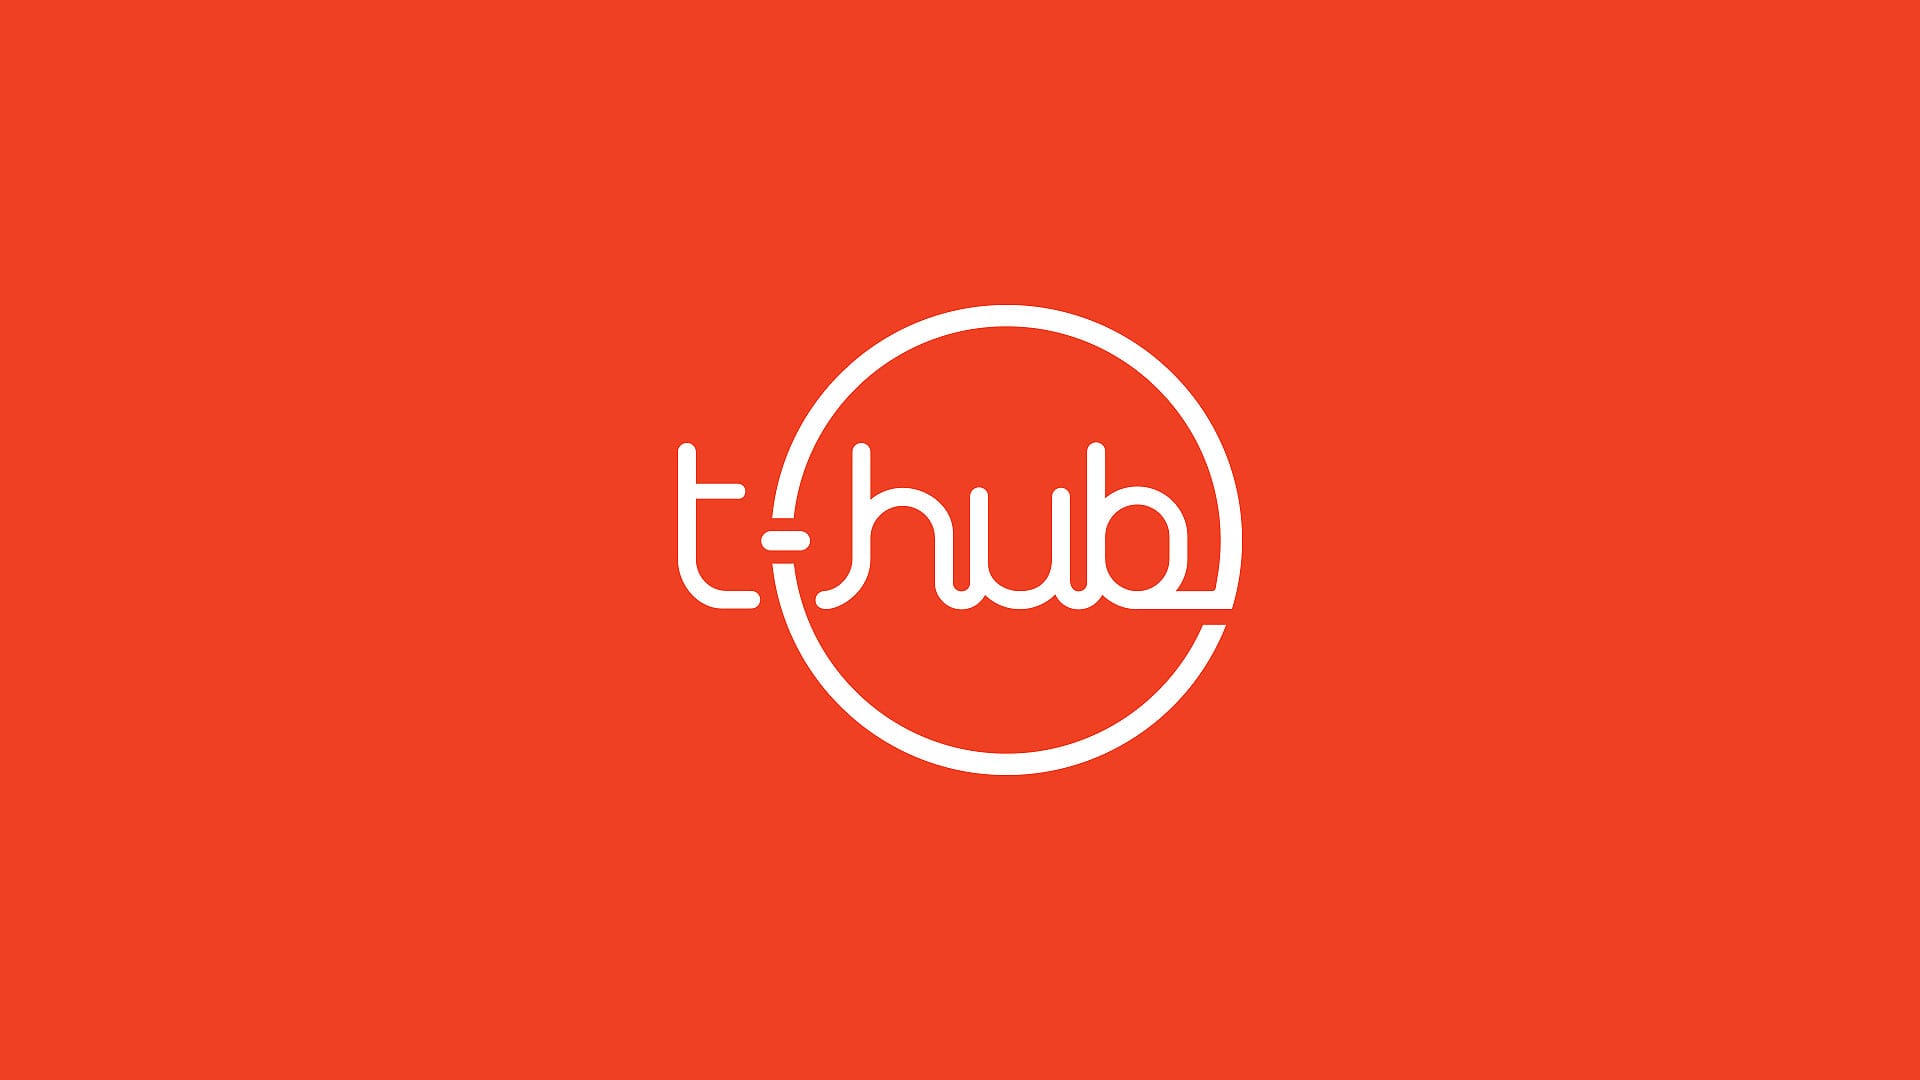 thublogo, inverselogo, branding, logoinception, officiallogo